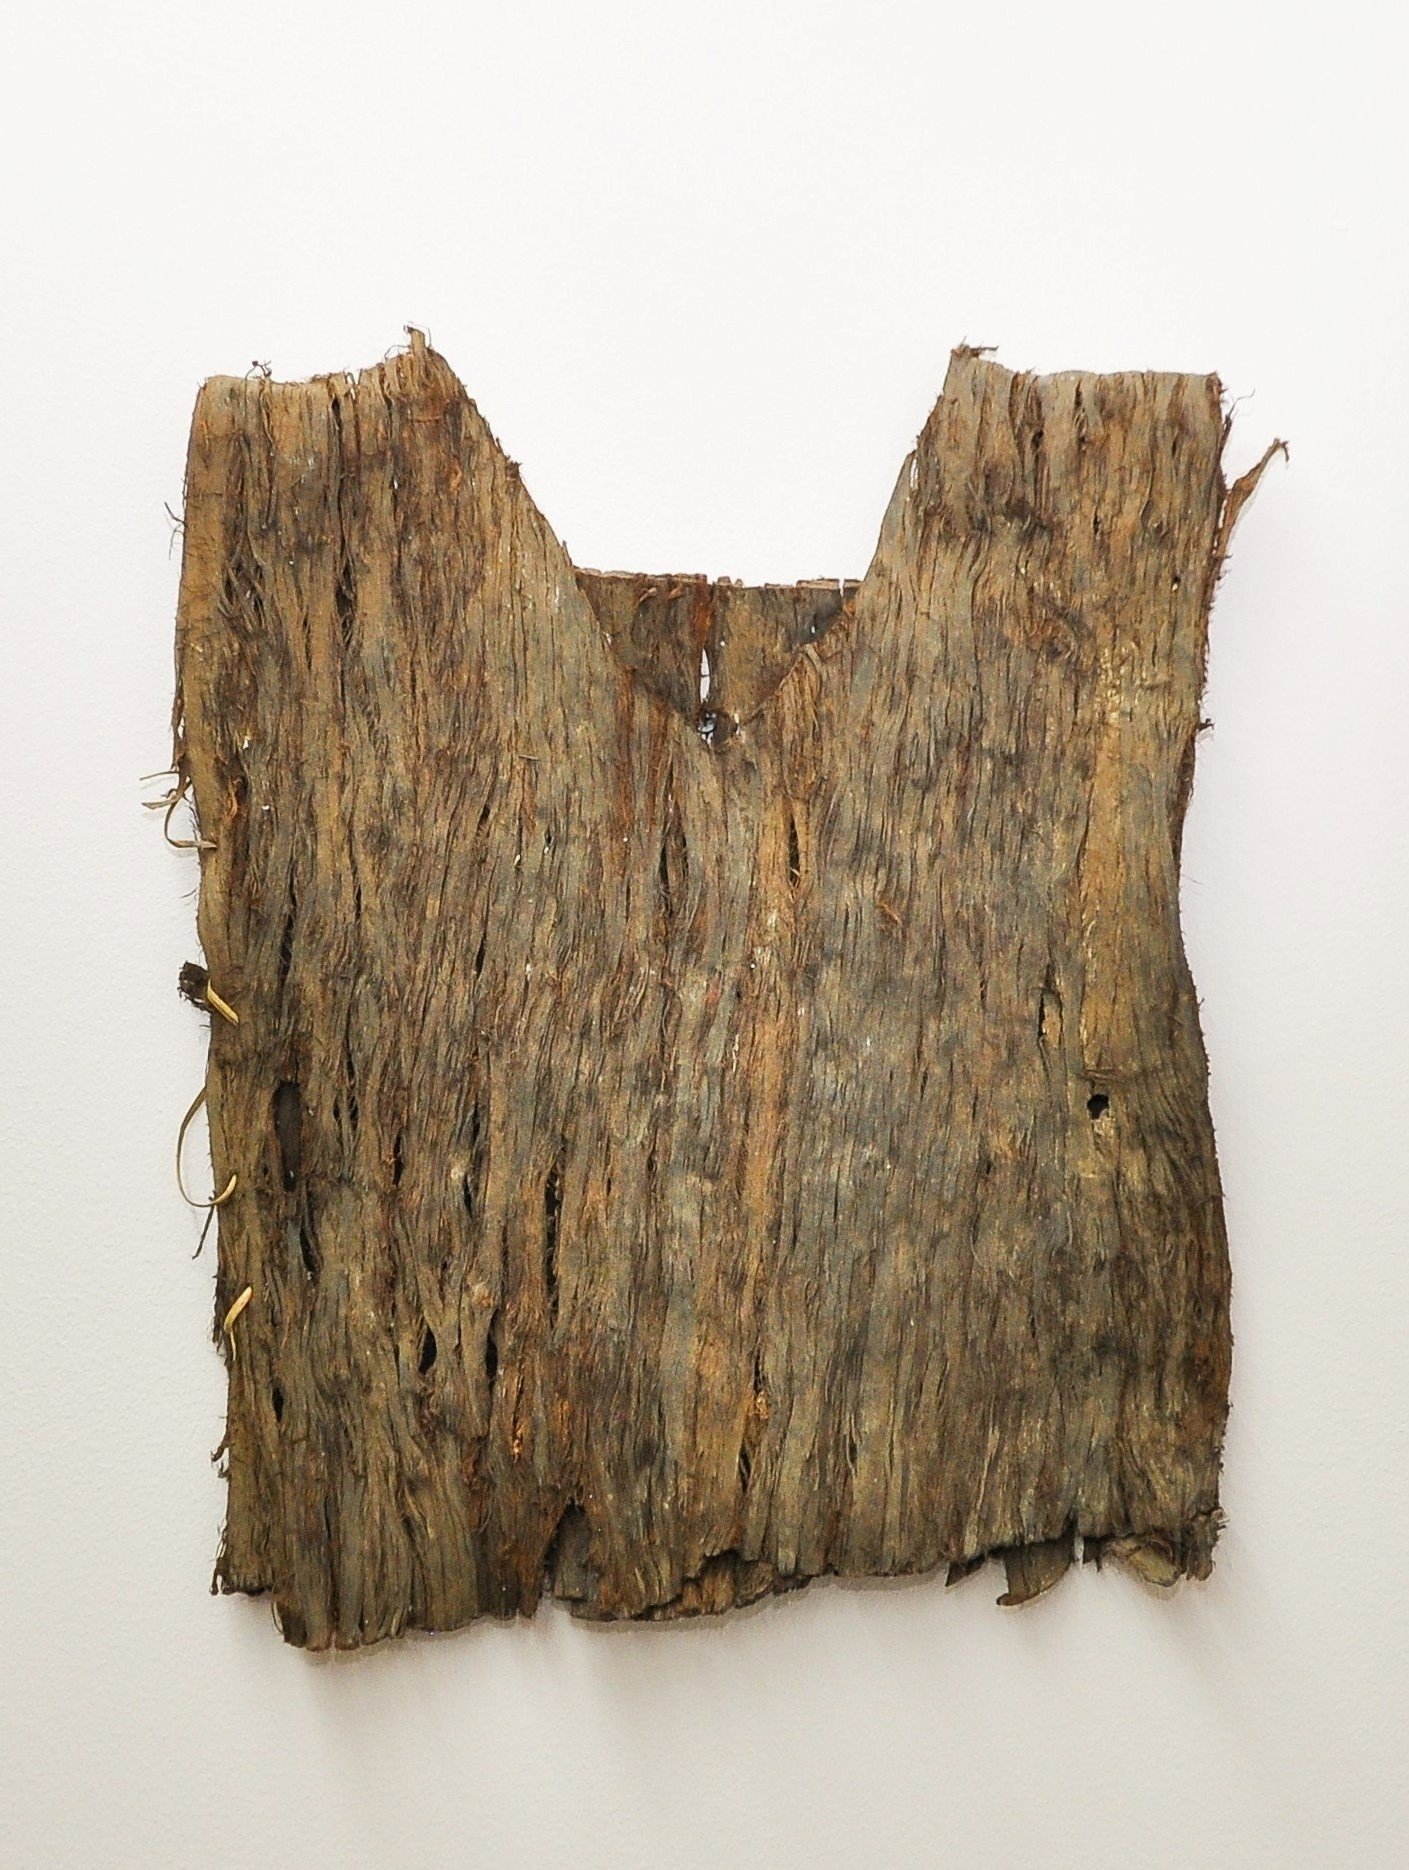 Áo vỏ cây được người Gia Rai sử dụng trước khi biết dệt nên các bộ trang phục truyền thống, hiện đang lưu giữ tại Bảo tàng tỉnh Gia Lai (Ảnh: Bá Tính)